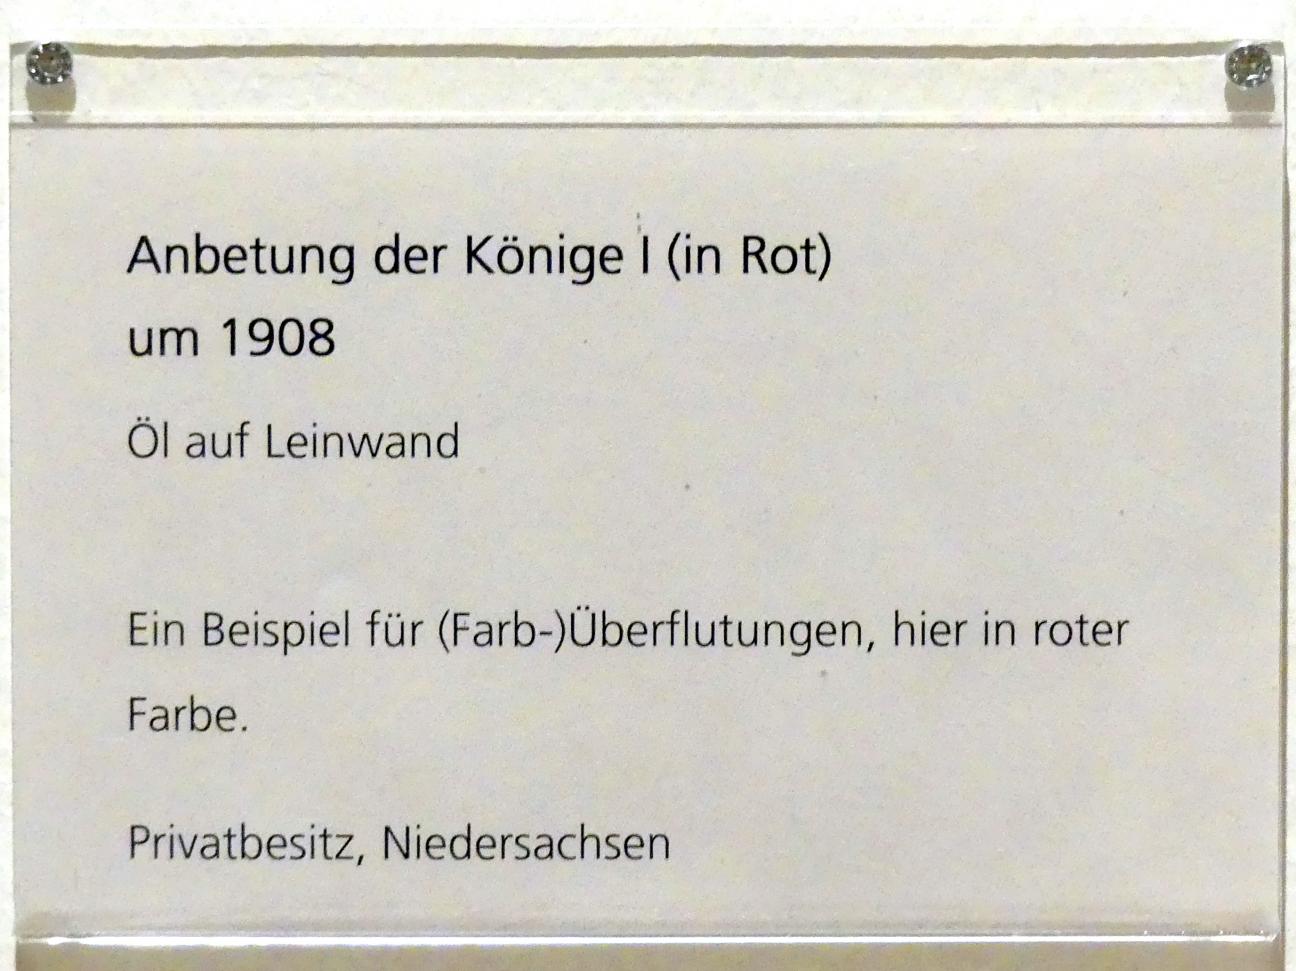 Adolf Hölzel (1880–1933), Anbetung der Könige I (in Rot), Schweinfurt, Museum Georg Schäfer, Ausstellung Adolf Hölzel vom 03.02.-01.05.2019, Saal 6, um 1908, Bild 2/2